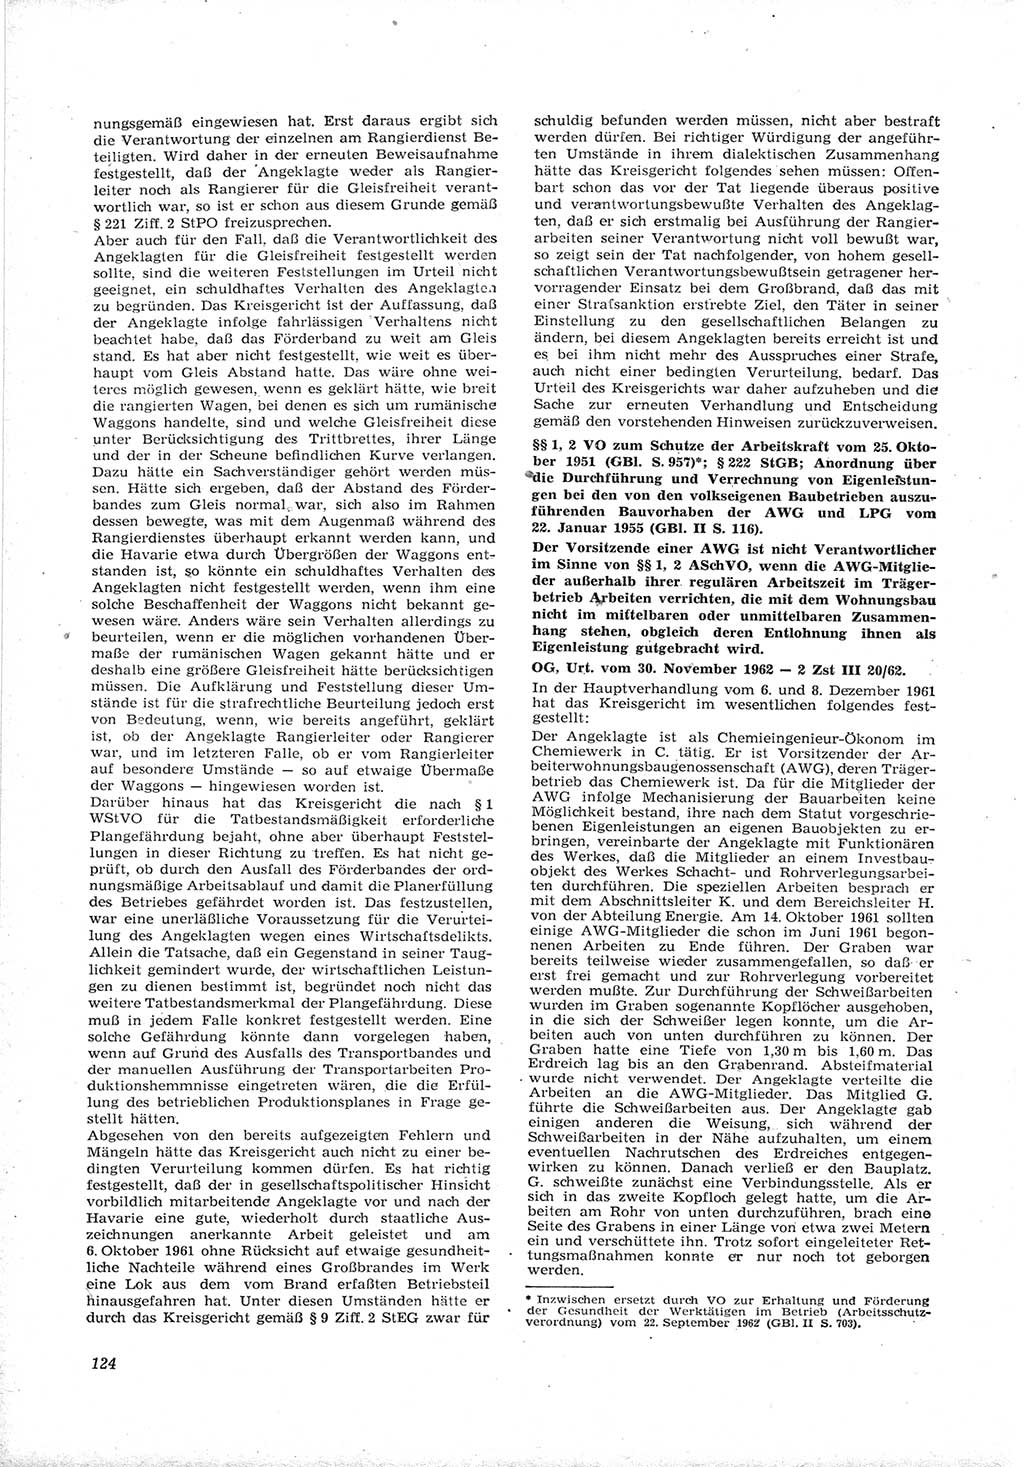 Neue Justiz (NJ), Zeitschrift für Recht und Rechtswissenschaft [Deutsche Demokratische Republik (DDR)], 17. Jahrgang 1963, Seite 124 (NJ DDR 1963, S. 124)